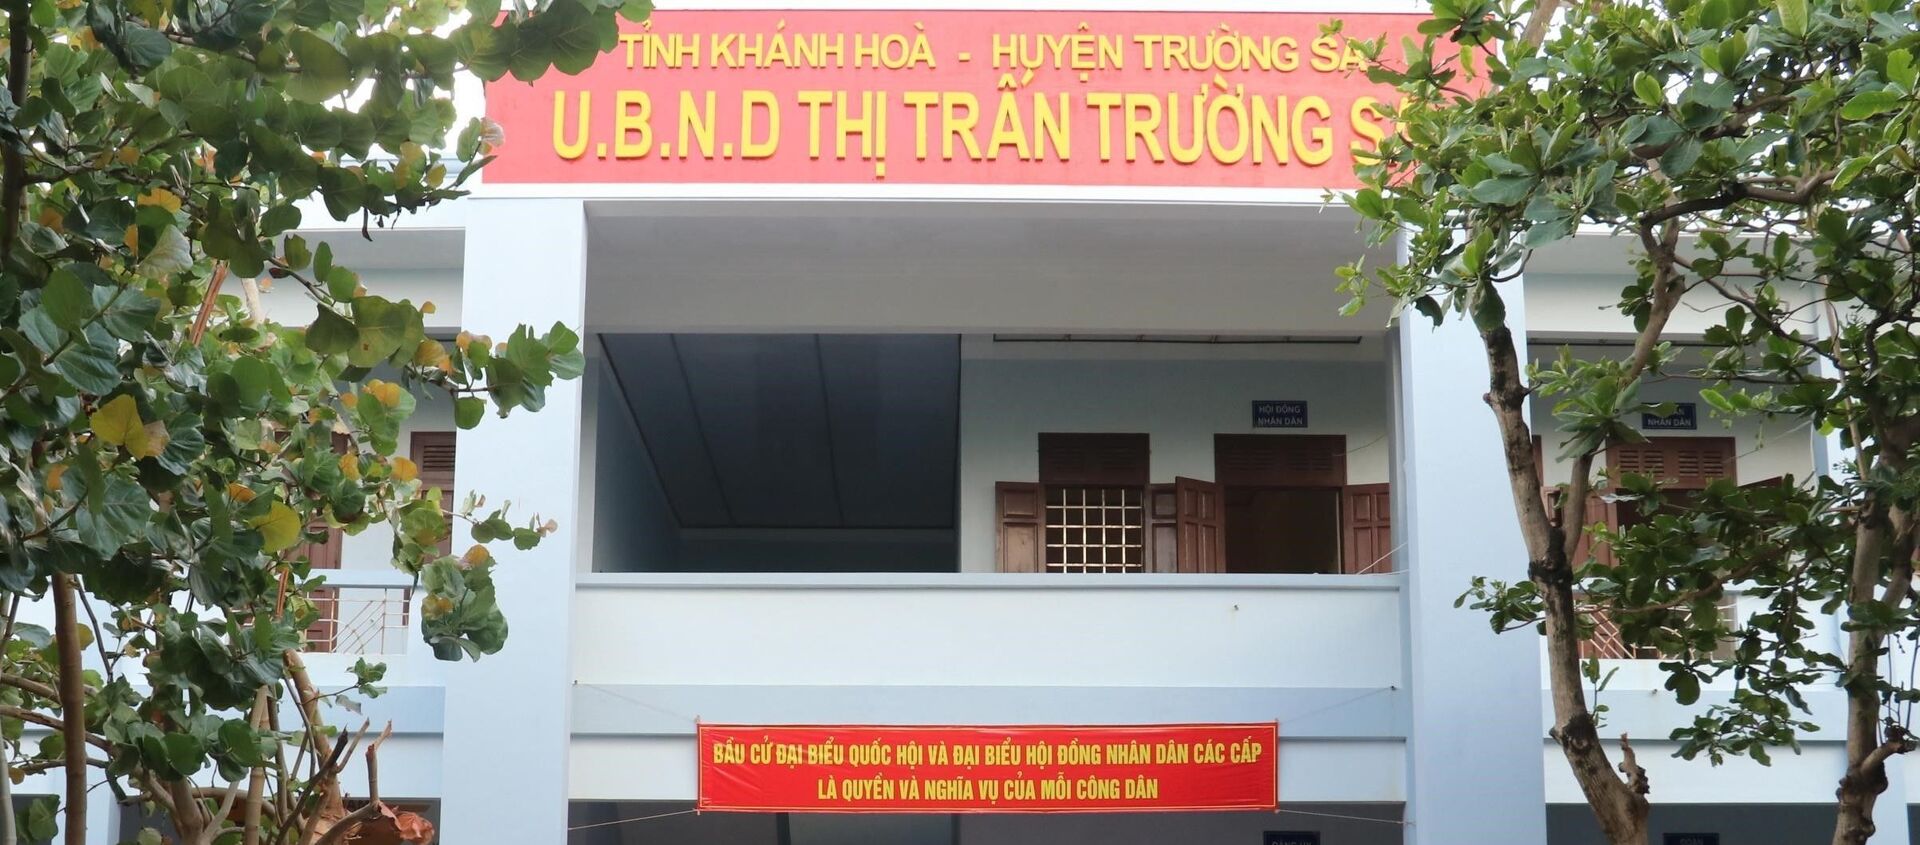  Công tác chuẩn bị công tác bầu cử tại UBND thị trấn Trường Sa. - Sputnik Việt Nam, 1920, 21.05.2021